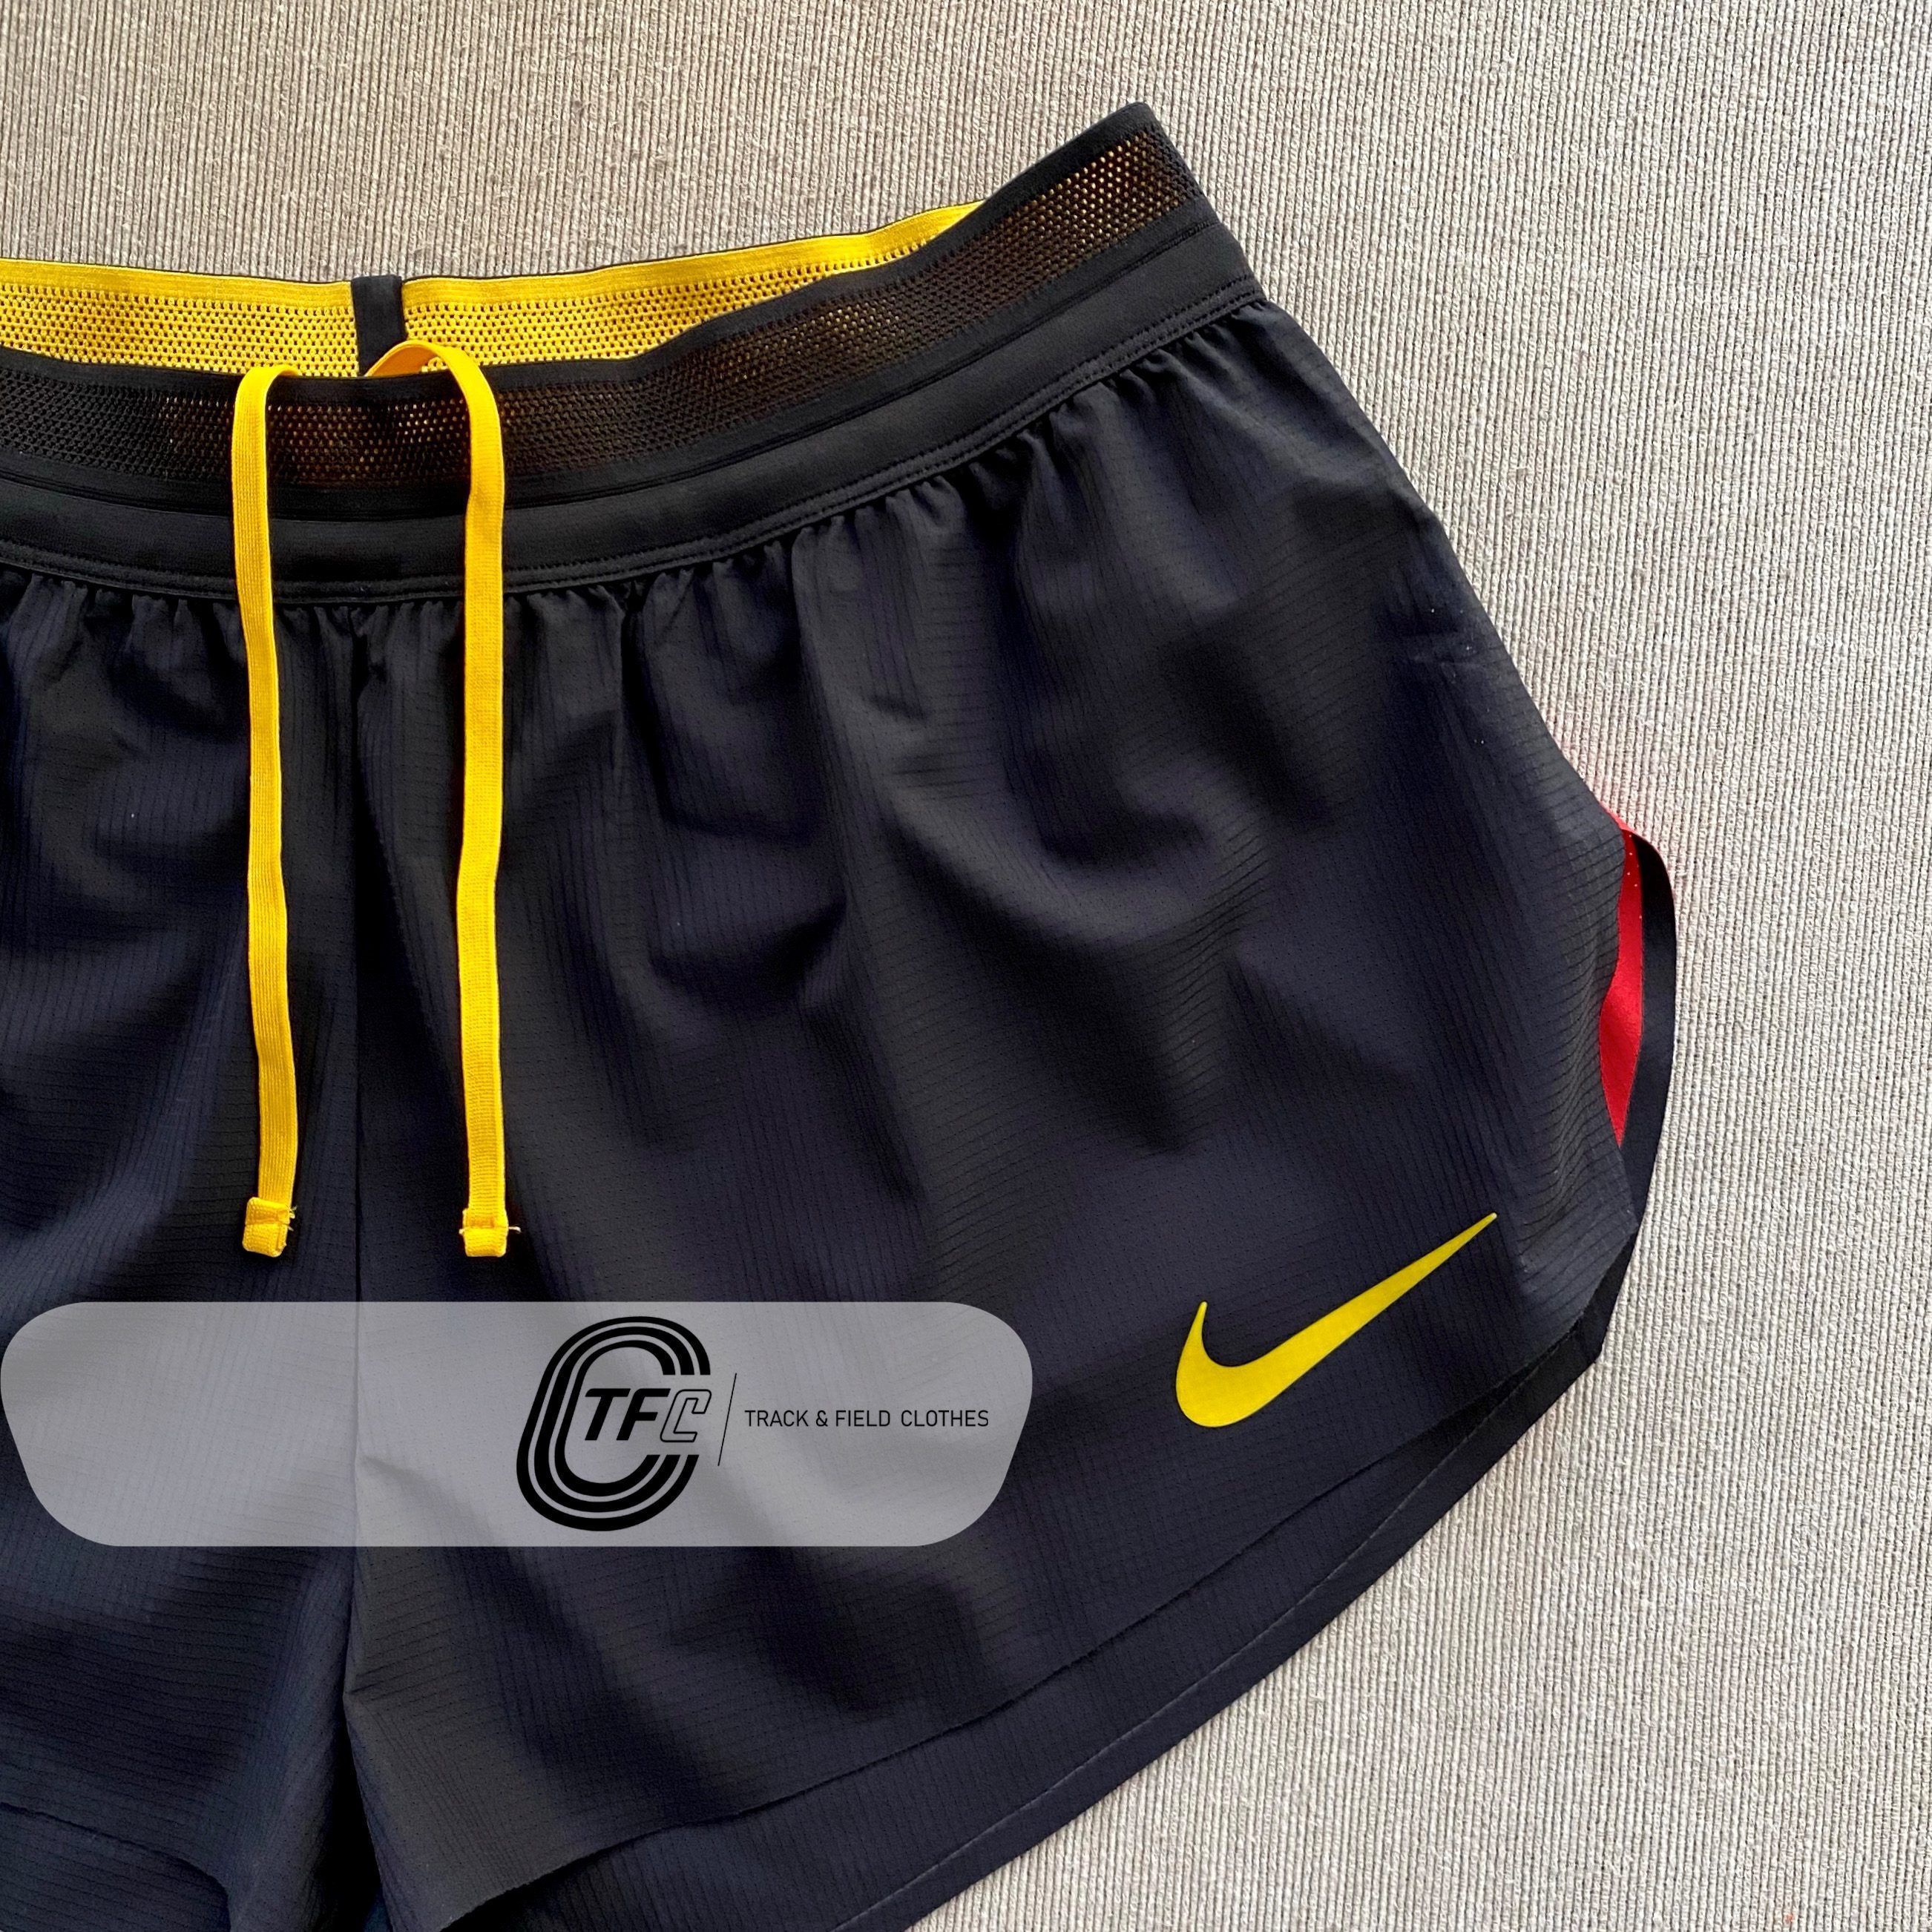 Nike Uganda International Pro Elite Shorts | Trackandfieldclothes